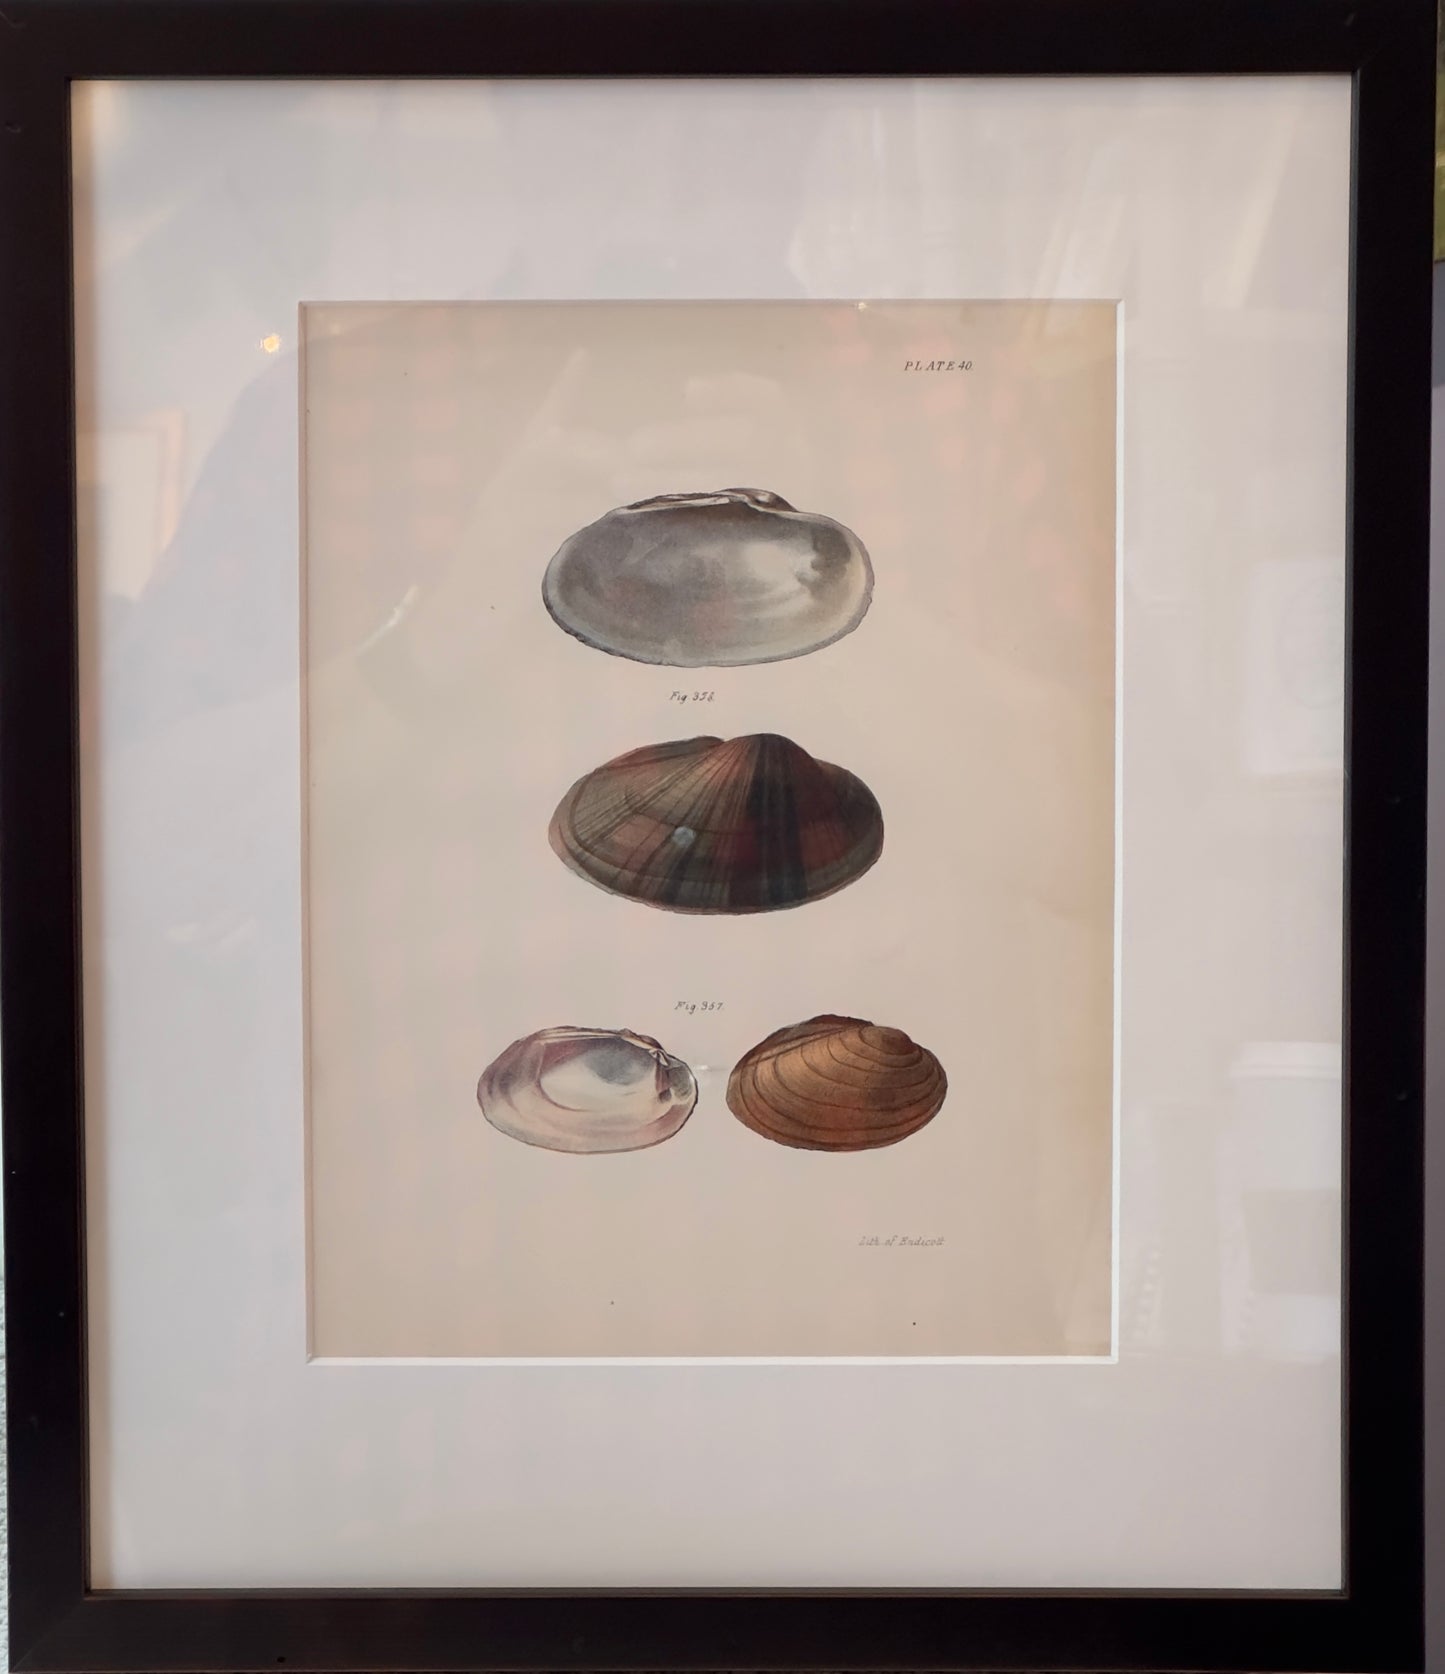 Framed print of 4 shells